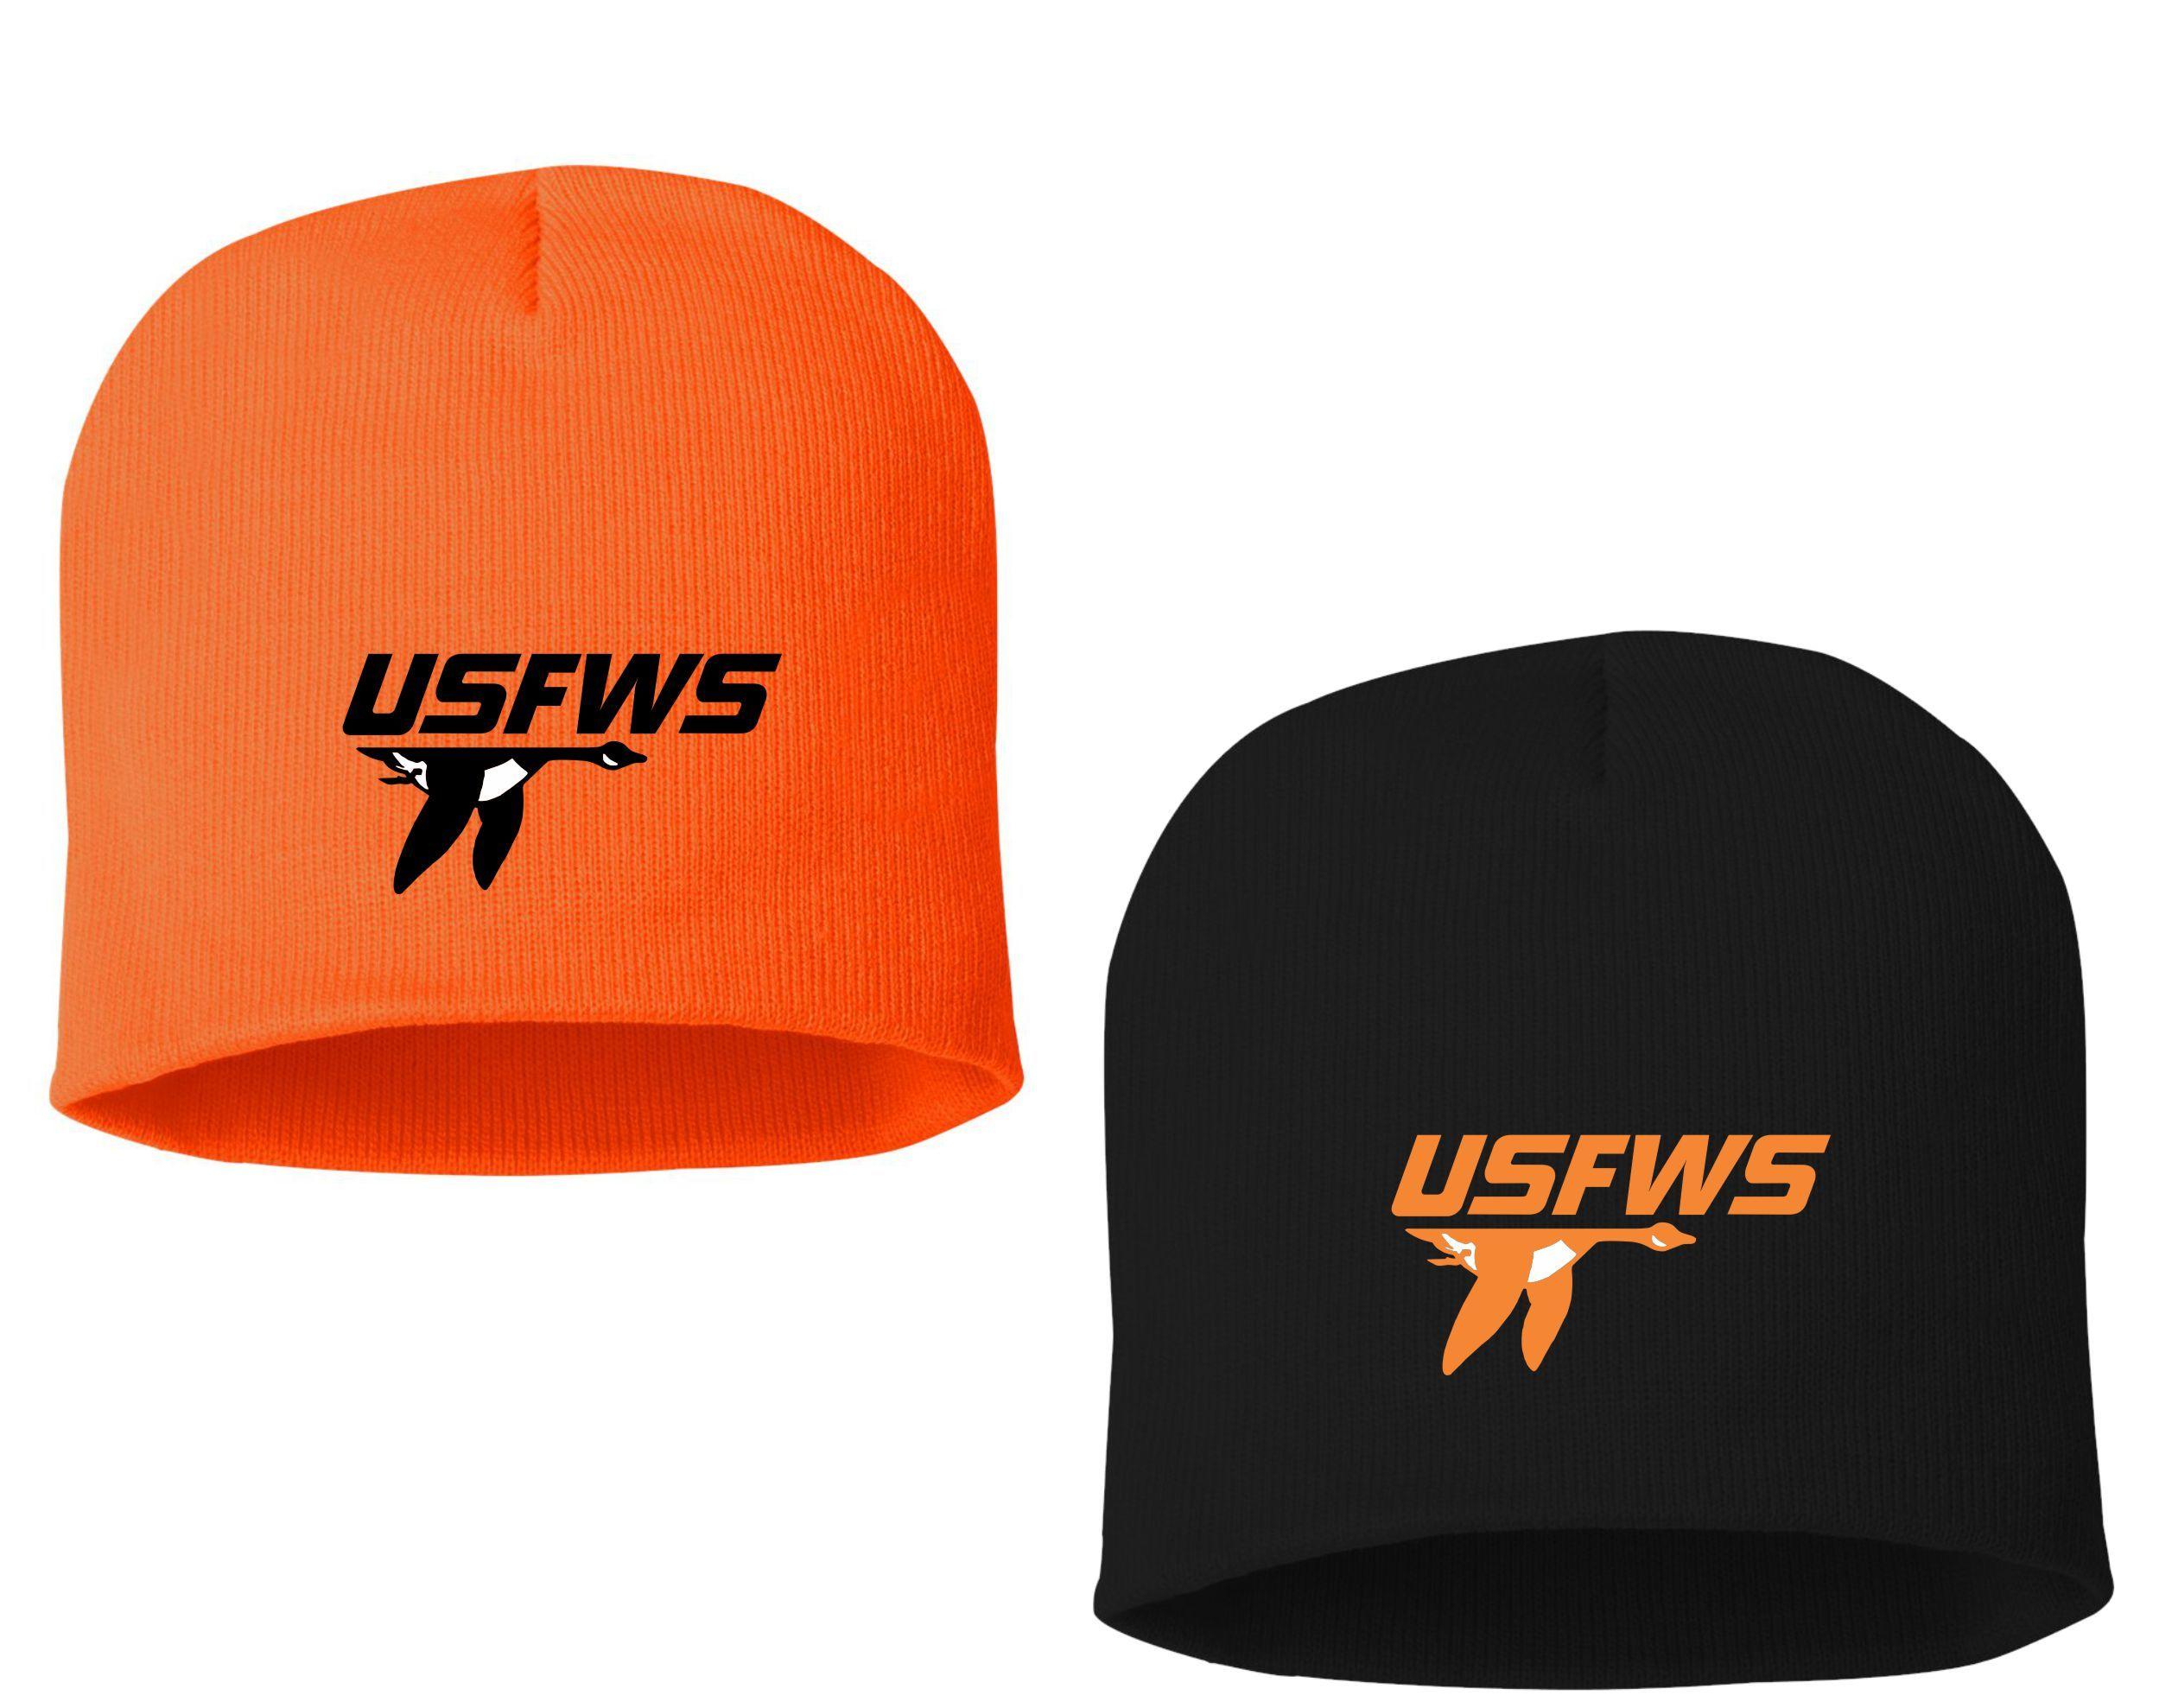 USFWS Logo - USFWS | Action Safety Apparel